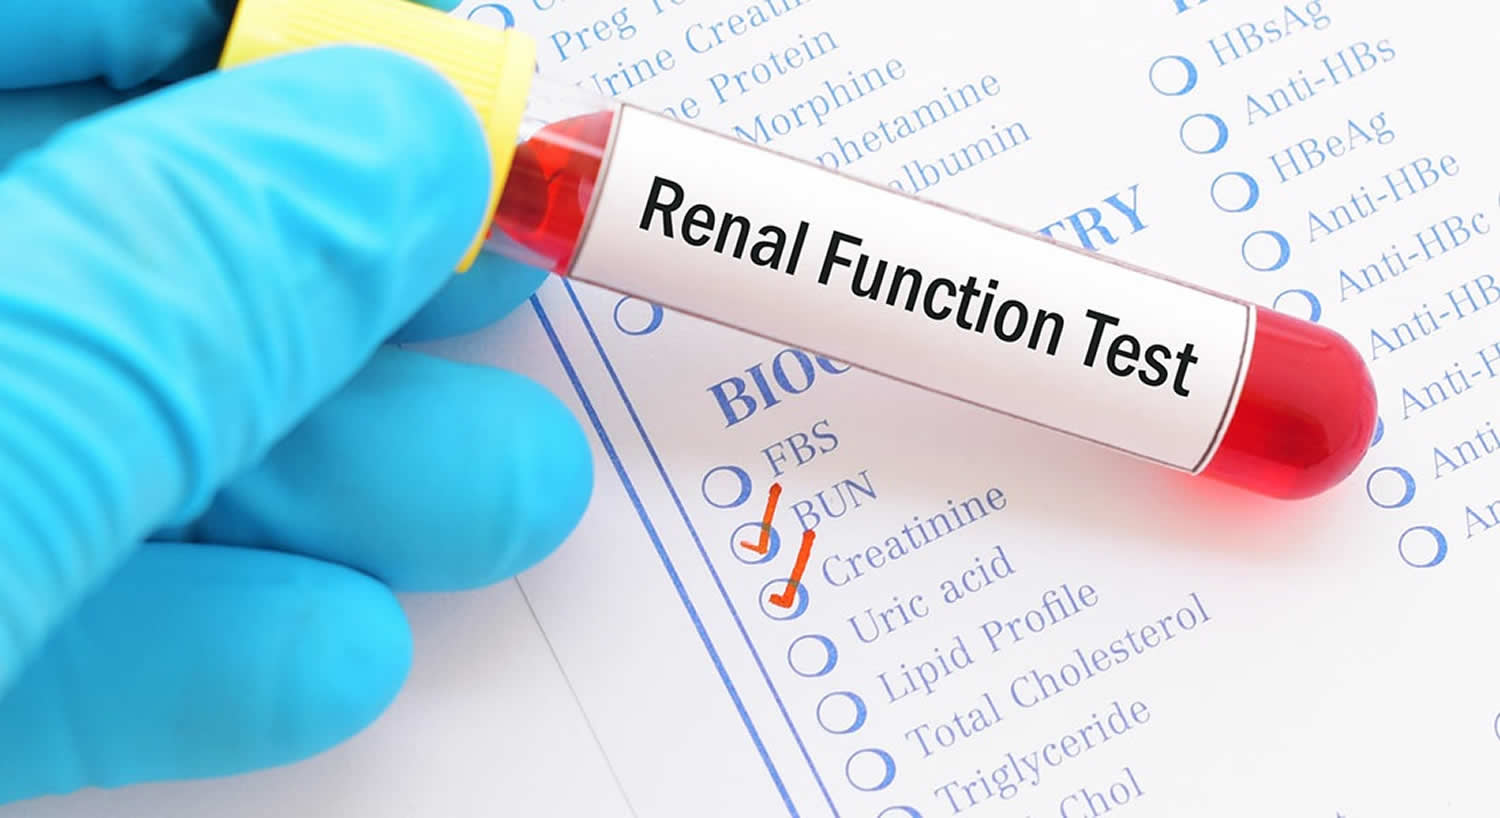 Kidney Function Test and Kidney Function Test Results ...